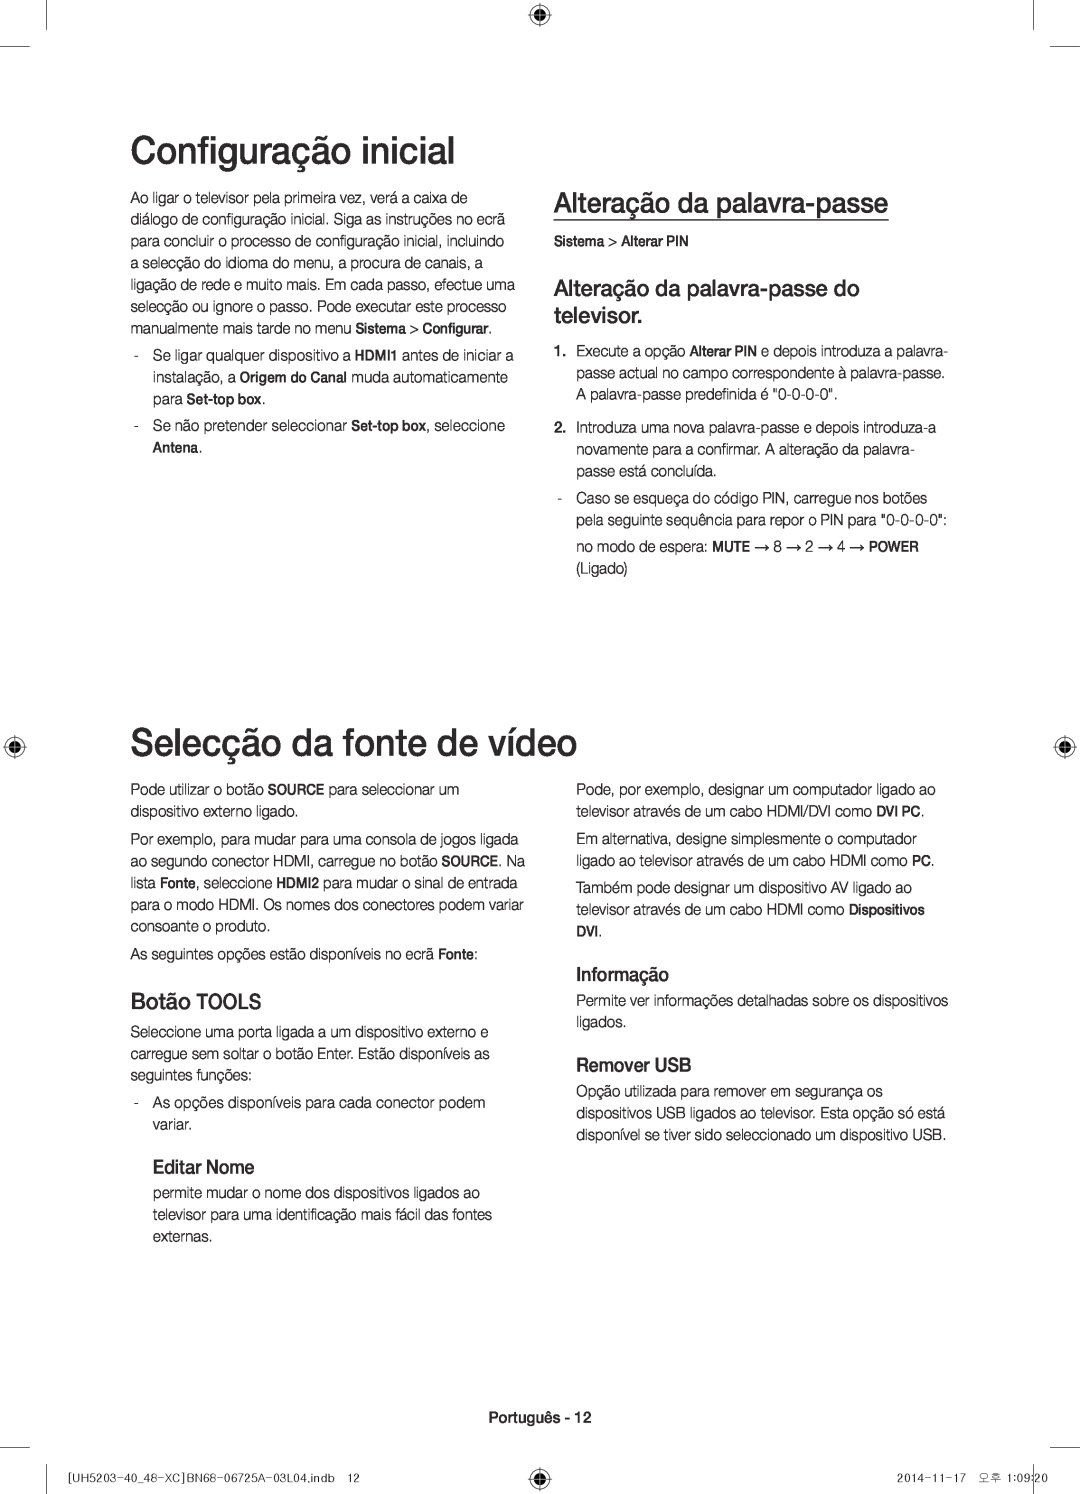 Samsung UE40H5203AWXXC manual Configuração inicial, Selecção da fonte de vídeo, Alteração da palavra-passe, Botão TOOLS 